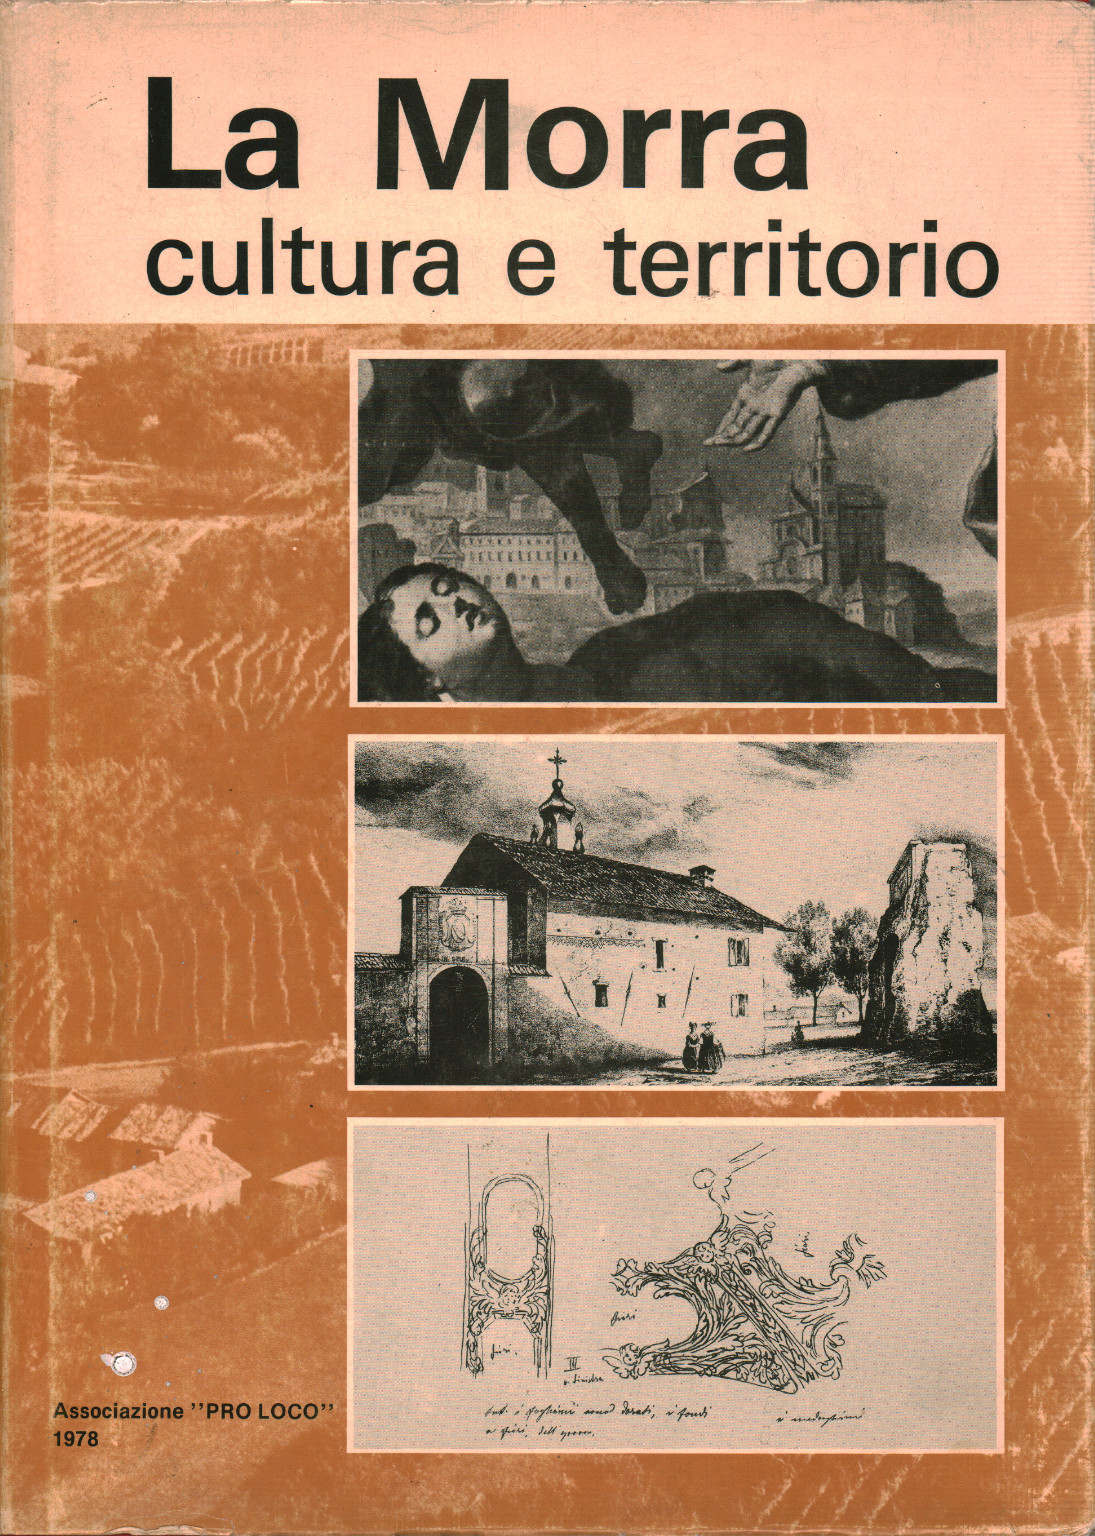 Culture et territoire de La Morra, s.a.